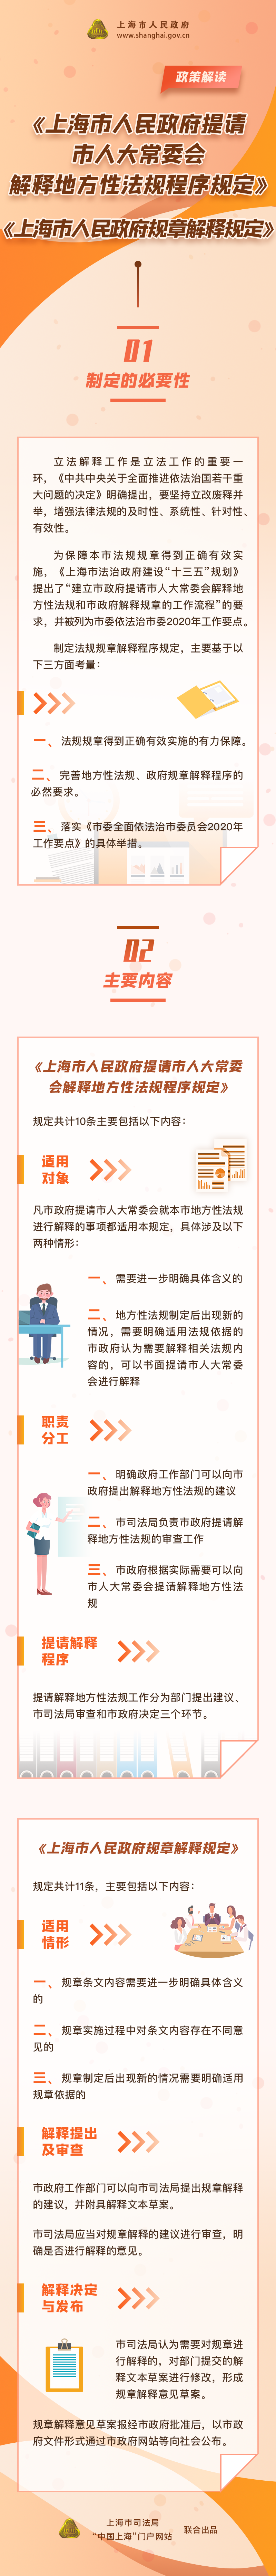 《上海市人民政府提请市人大常委会解释地方性法规程序规定》《上海市人民政府规章解释规定》政策图解.png